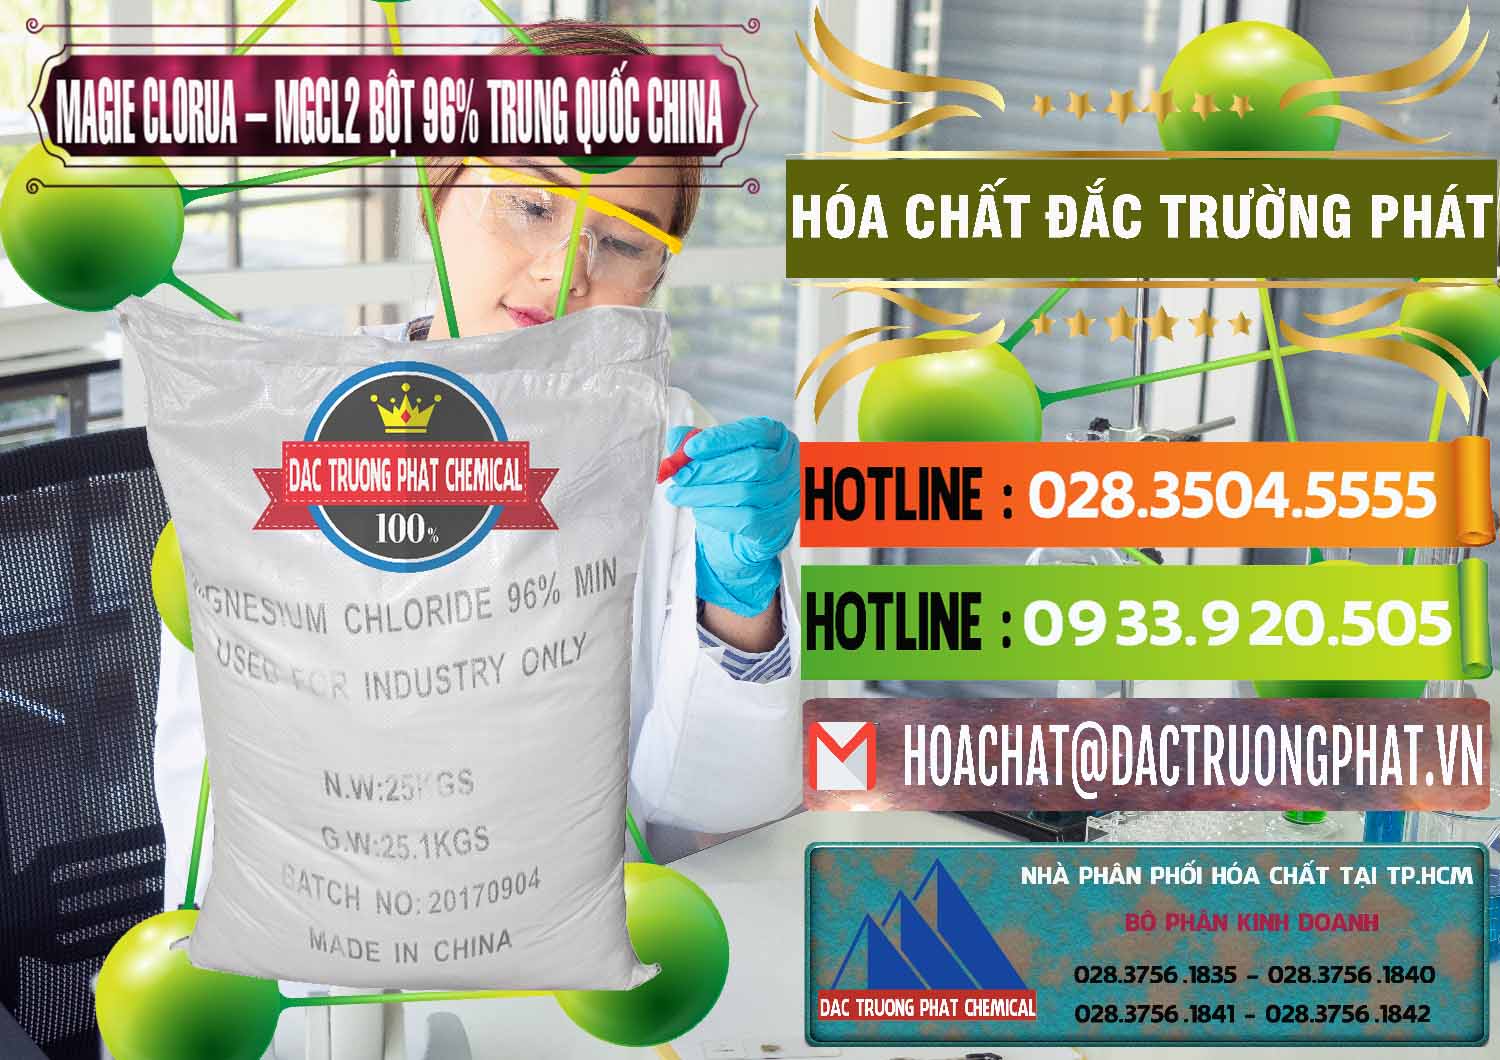 Cty chuyên kinh doanh & bán Magie Clorua – MGCL2 96% Dạng Bột Bao Chữ Đen Trung Quốc China - 0205 - Nhập khẩu và cung cấp hóa chất tại TP.HCM - cungcaphoachat.com.vn